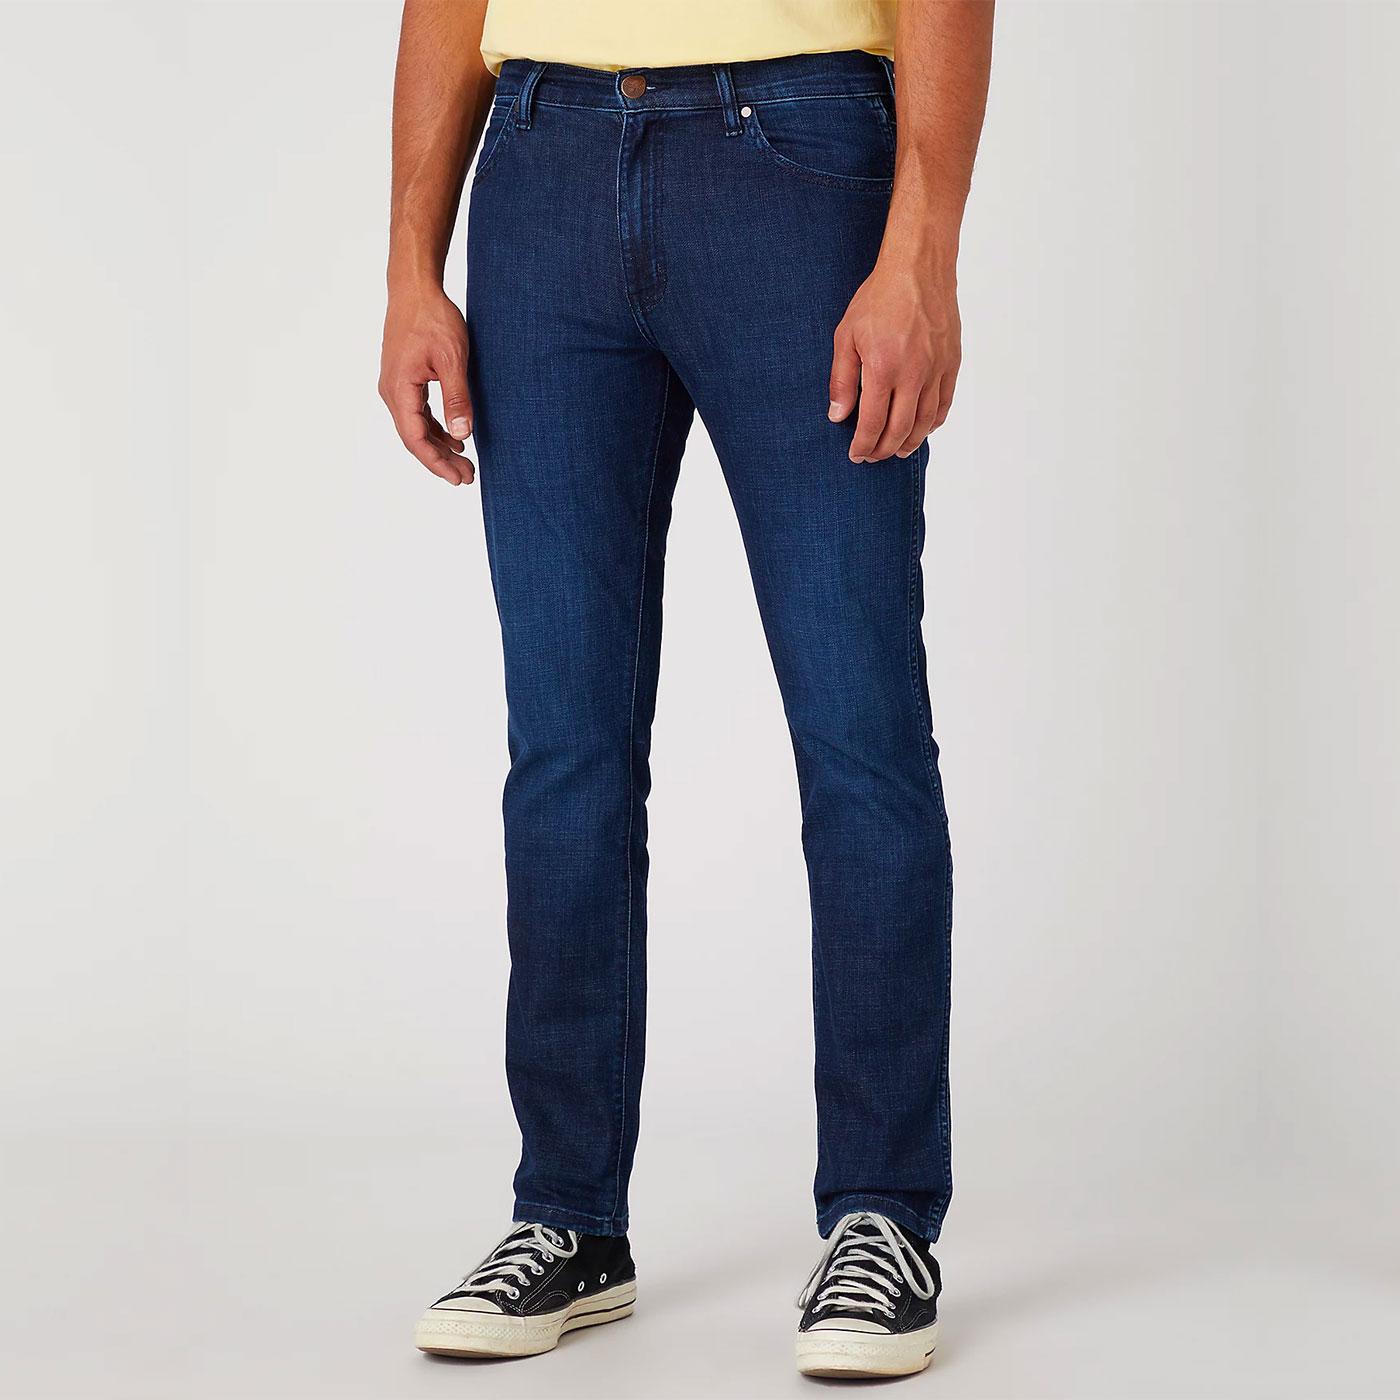 Larston Wrangler retro 812 Slim Taper Denim Jeans in Soft Rock